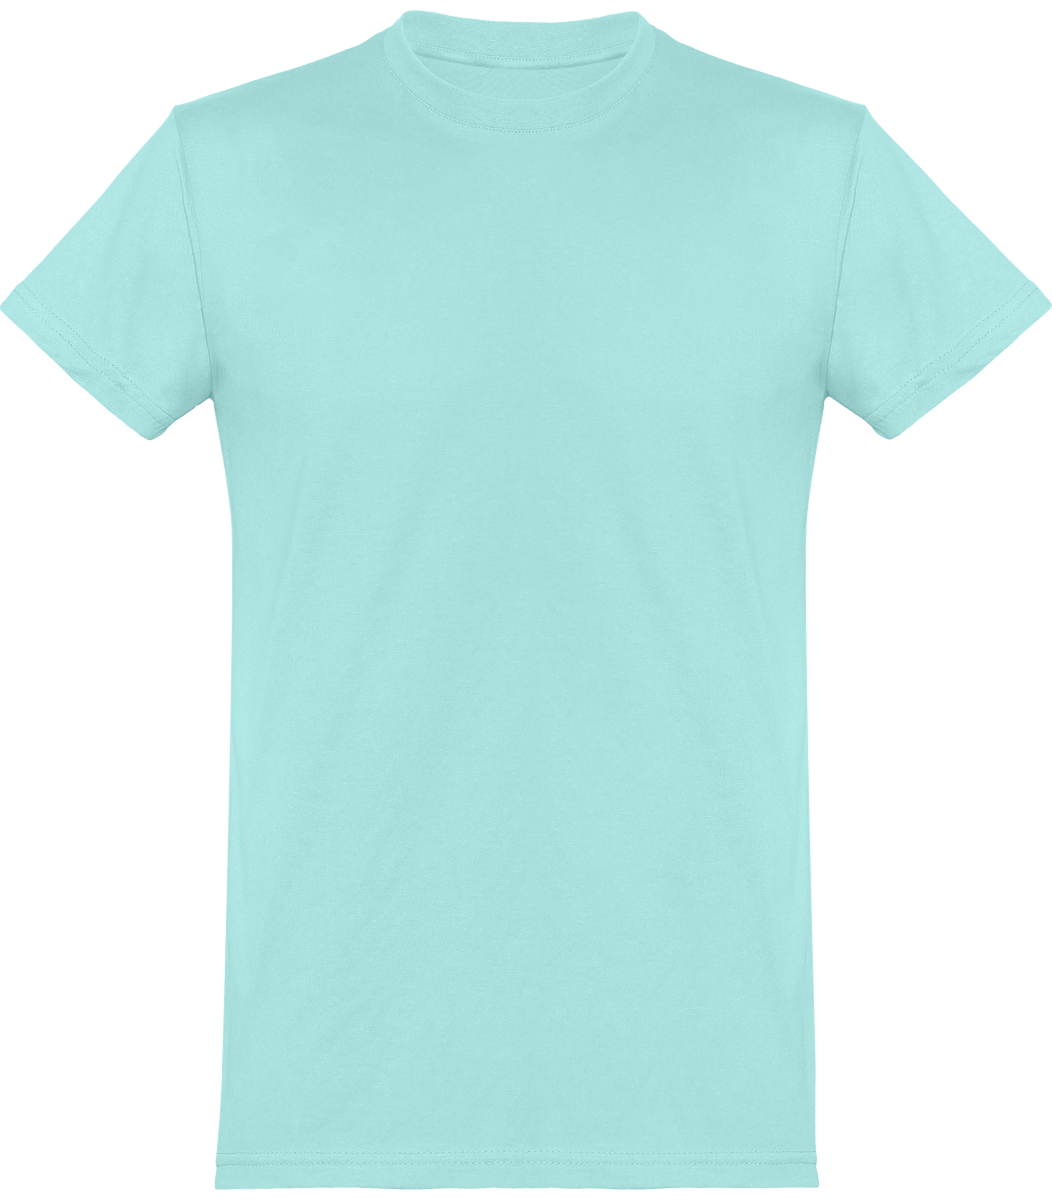 Camiseta Básica Hombre Manga Corta Personalizada En Bordado O Estampado | Tunetoo Turquoise